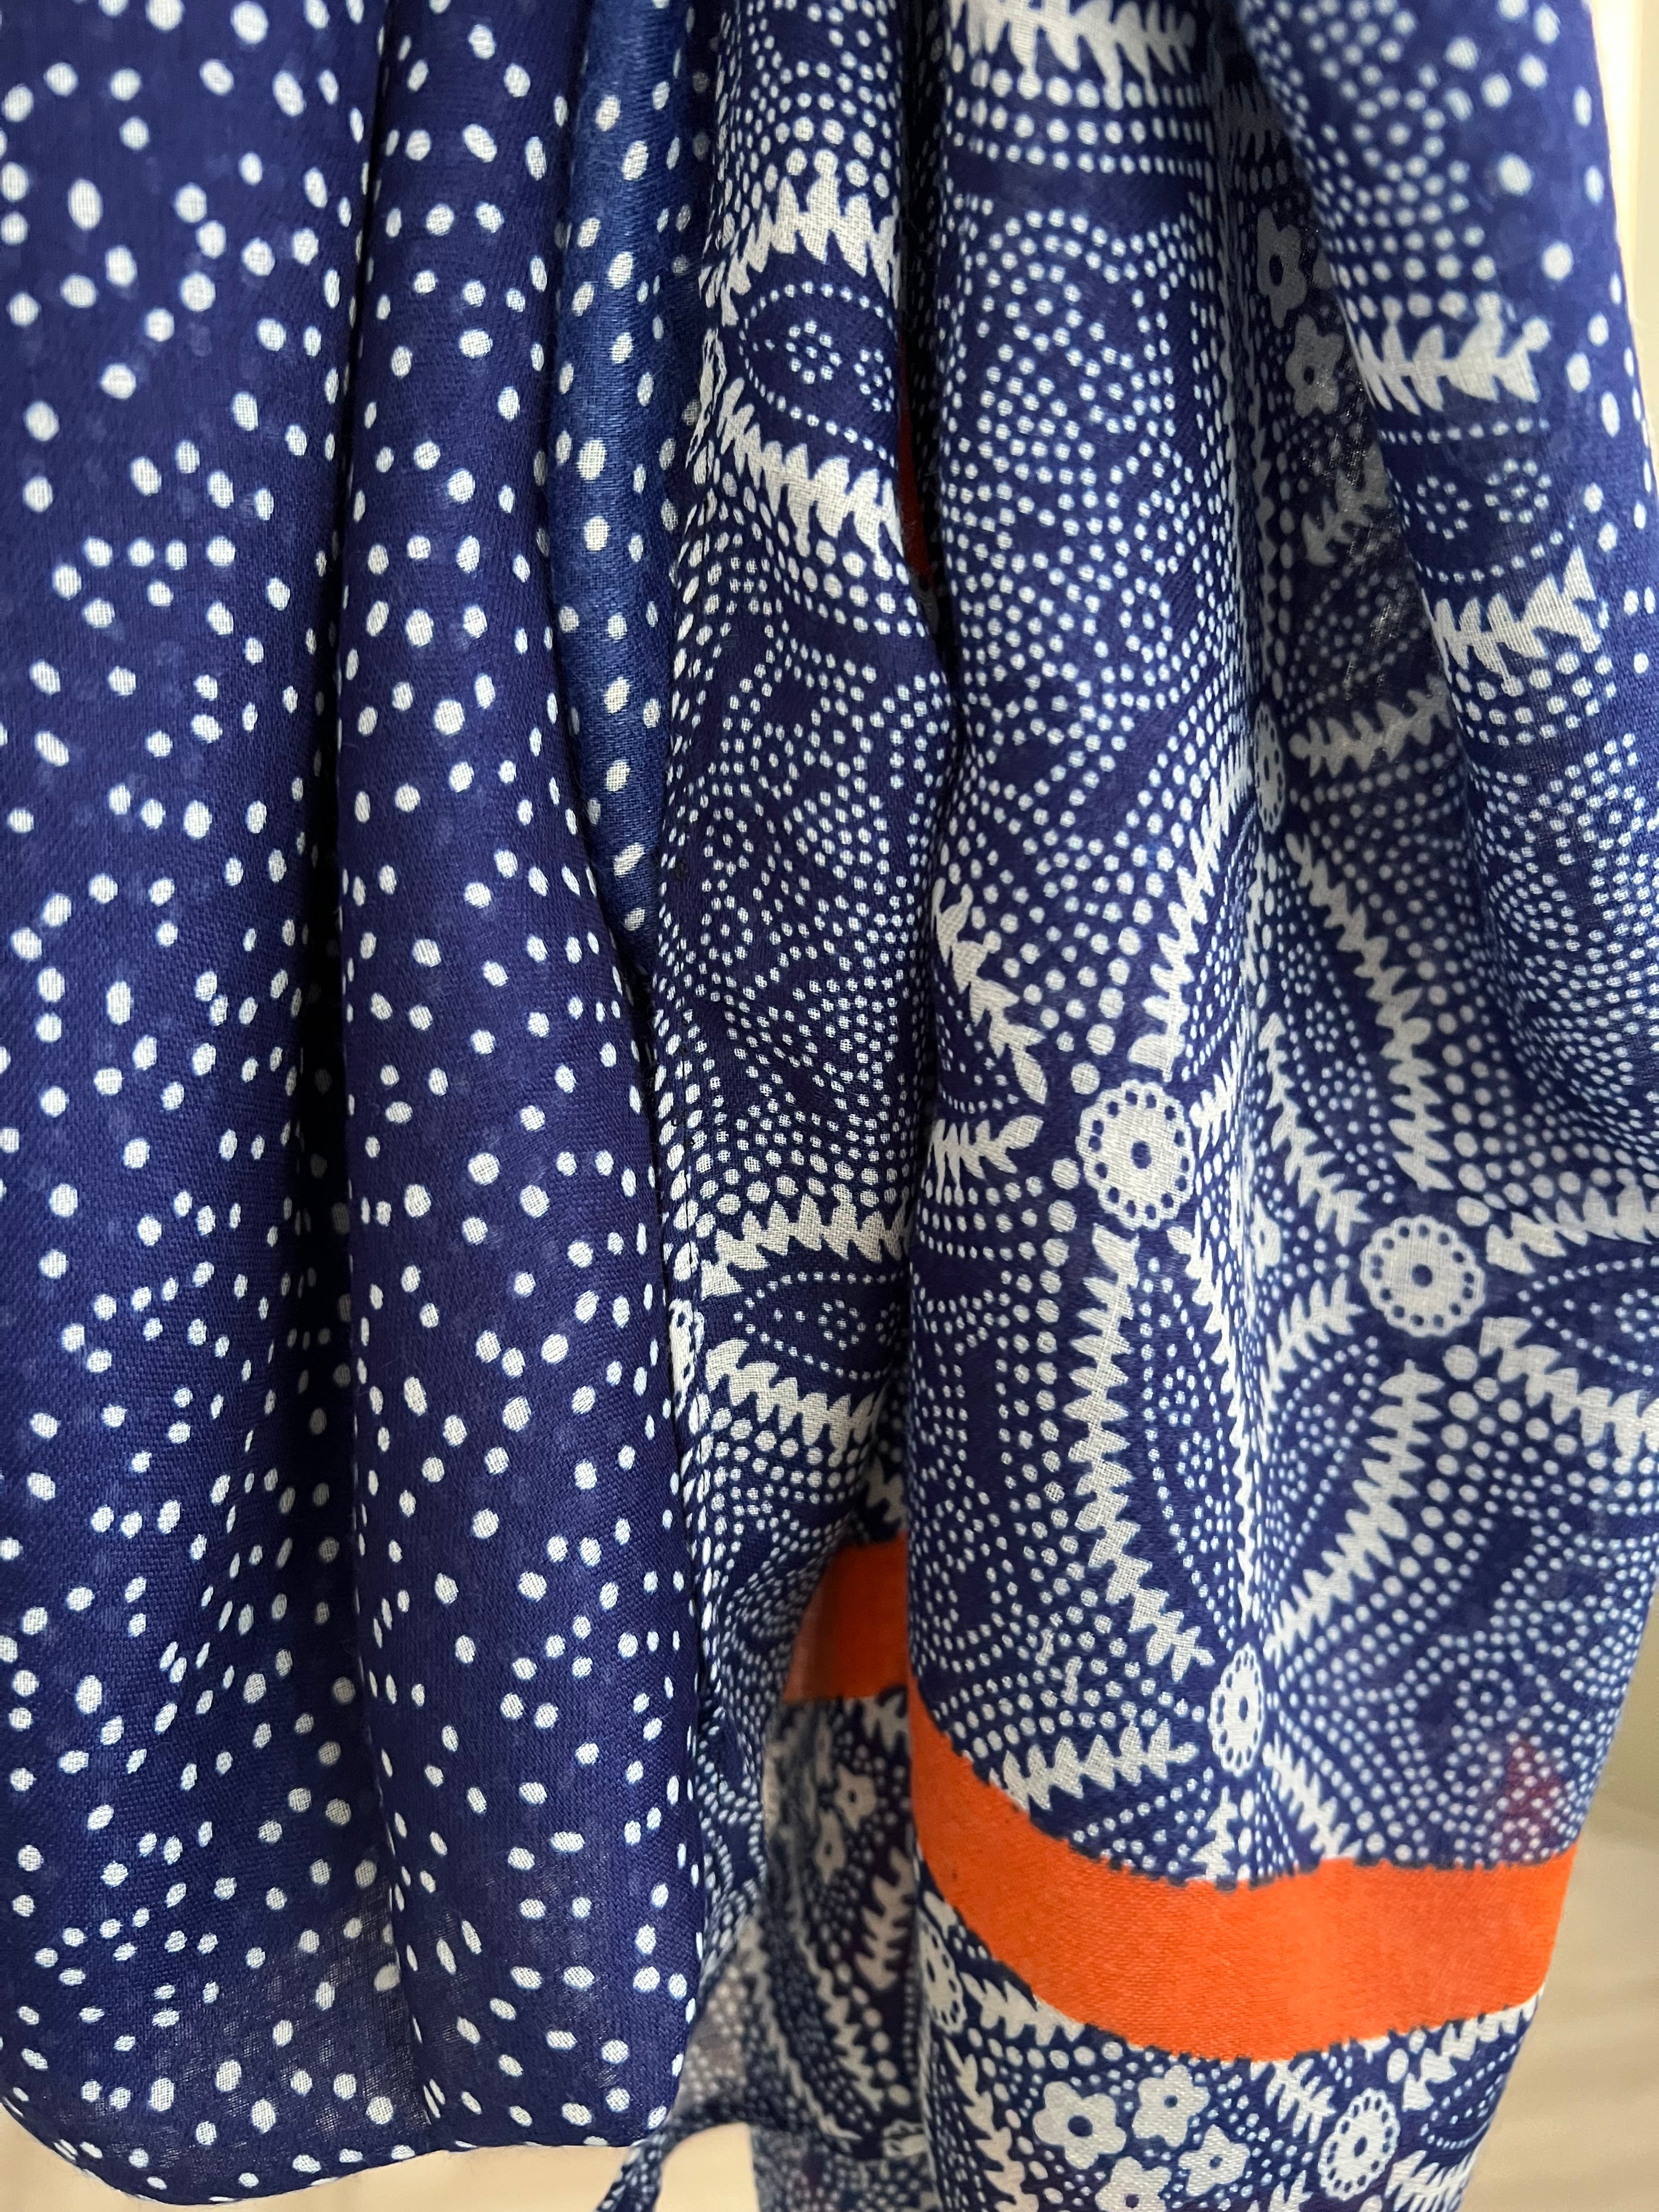 Batik Print Tassel Scarf in Orange & Blue